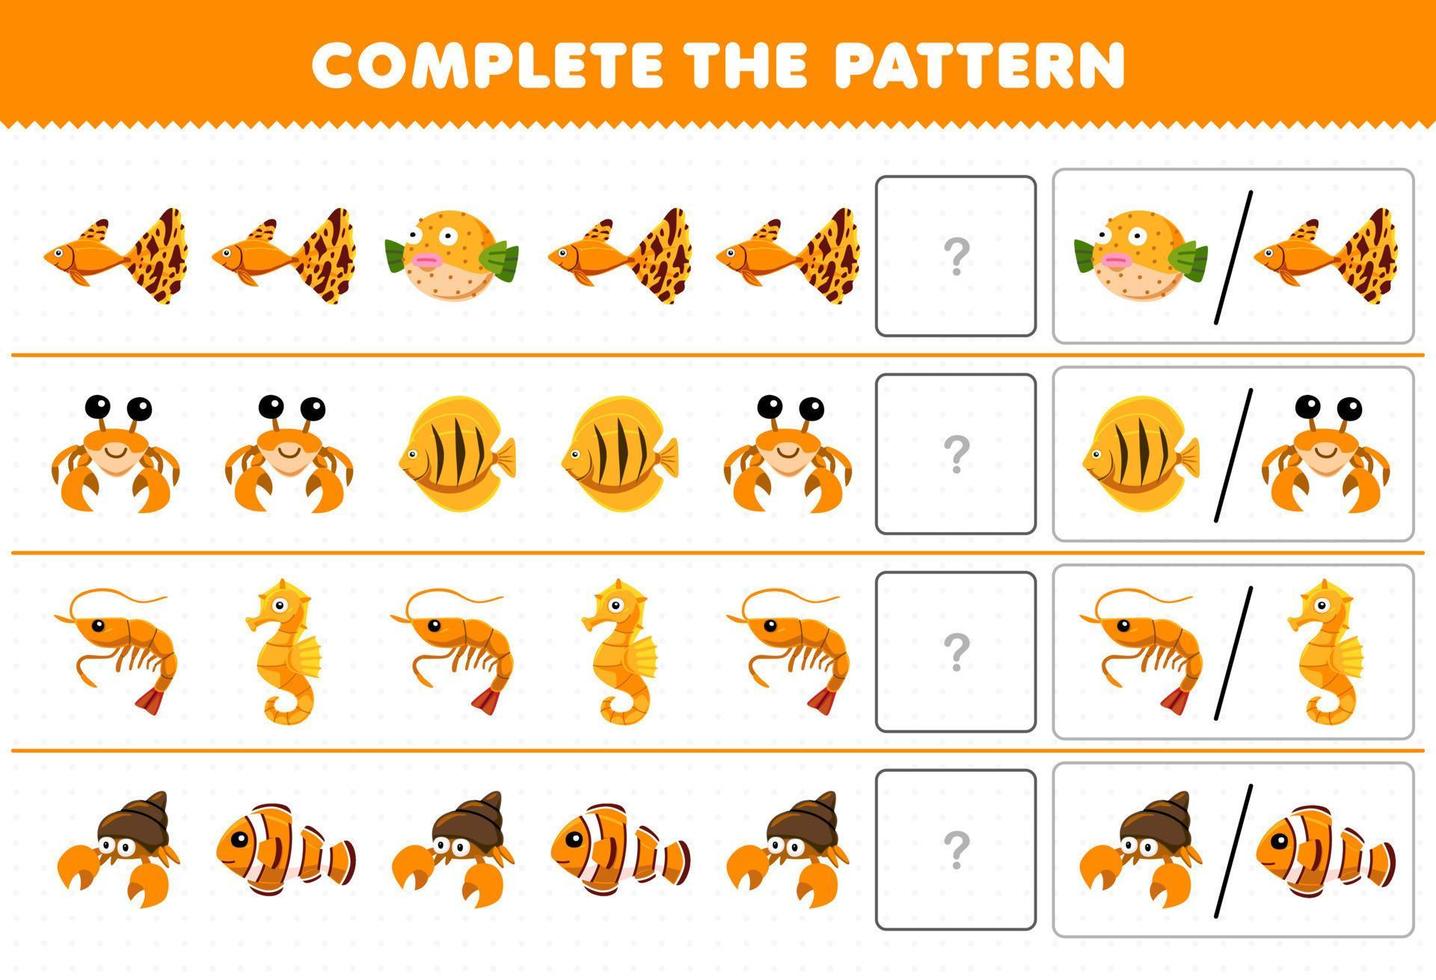 juego educativo para niños complete el patrón adivinando la imagen correcta de la hoja de trabajo subacuática imprimible del caballito de mar del camarón del cangrejo del pescado lindo de la historieta vector